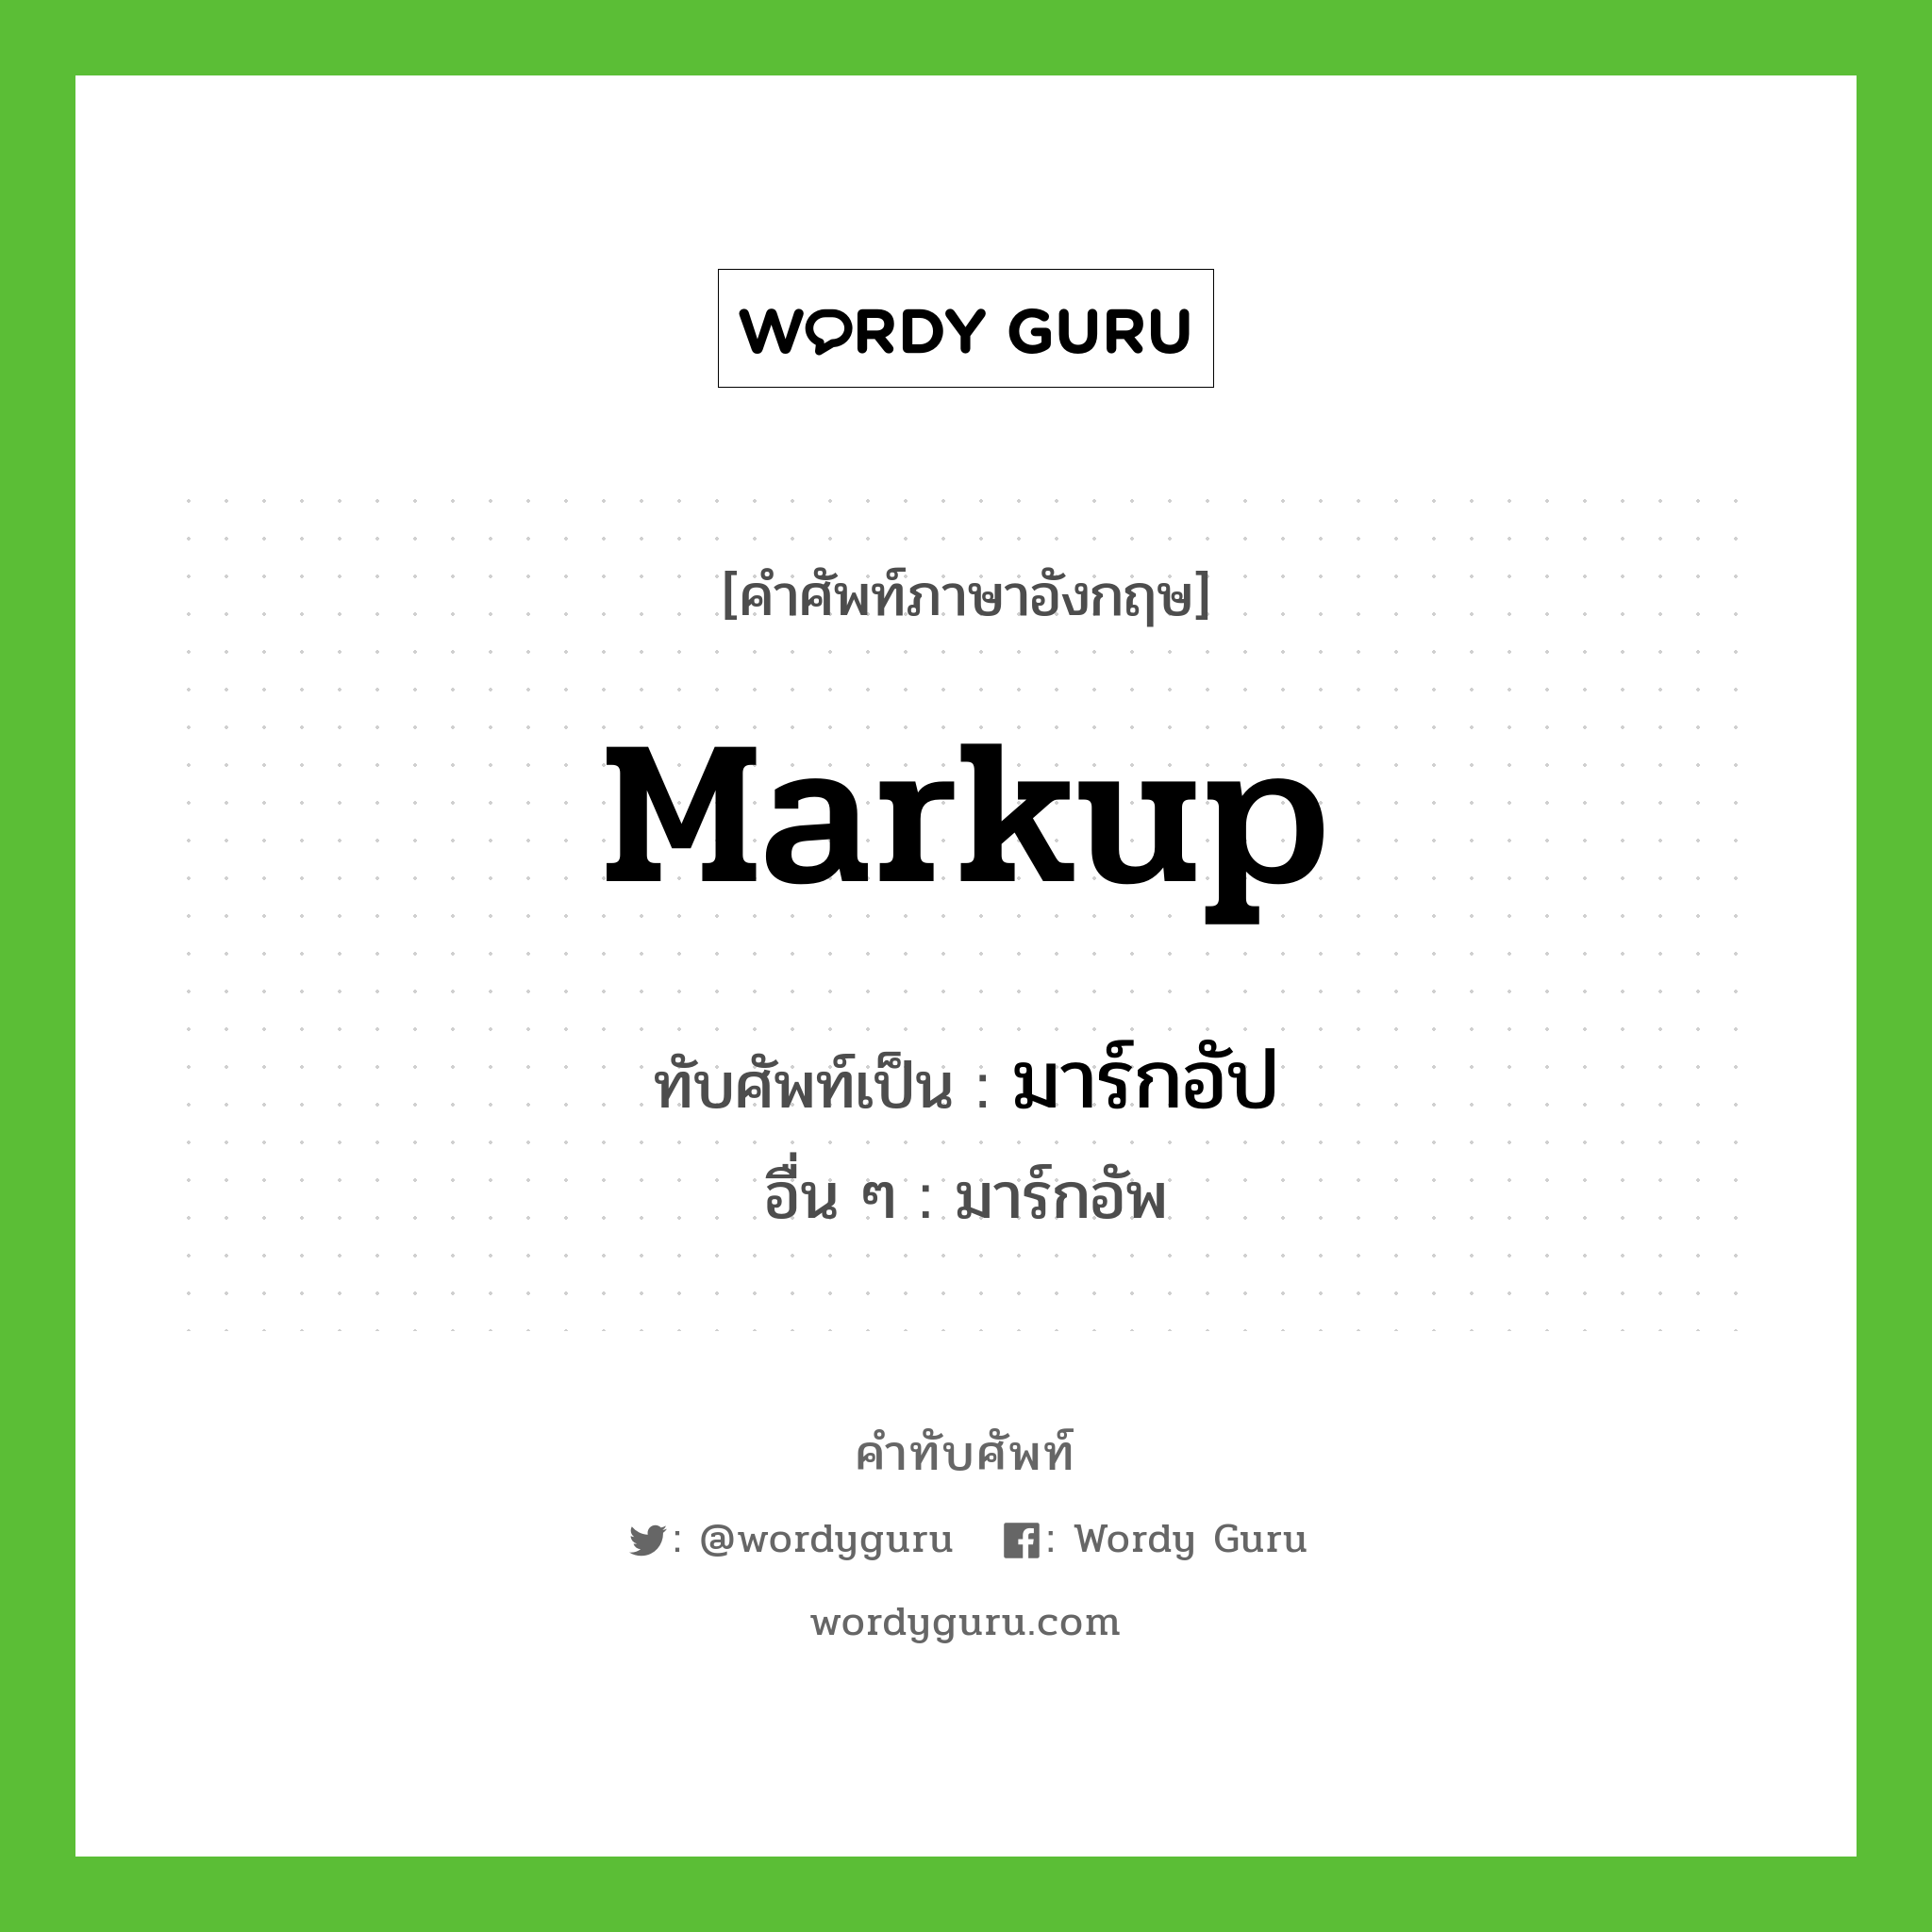 markup เขียนเป็นคำไทยว่าอะไร?, คำศัพท์ภาษาอังกฤษ markup ทับศัพท์เป็น มาร์กอัป อื่น ๆ มาร์กอัพ